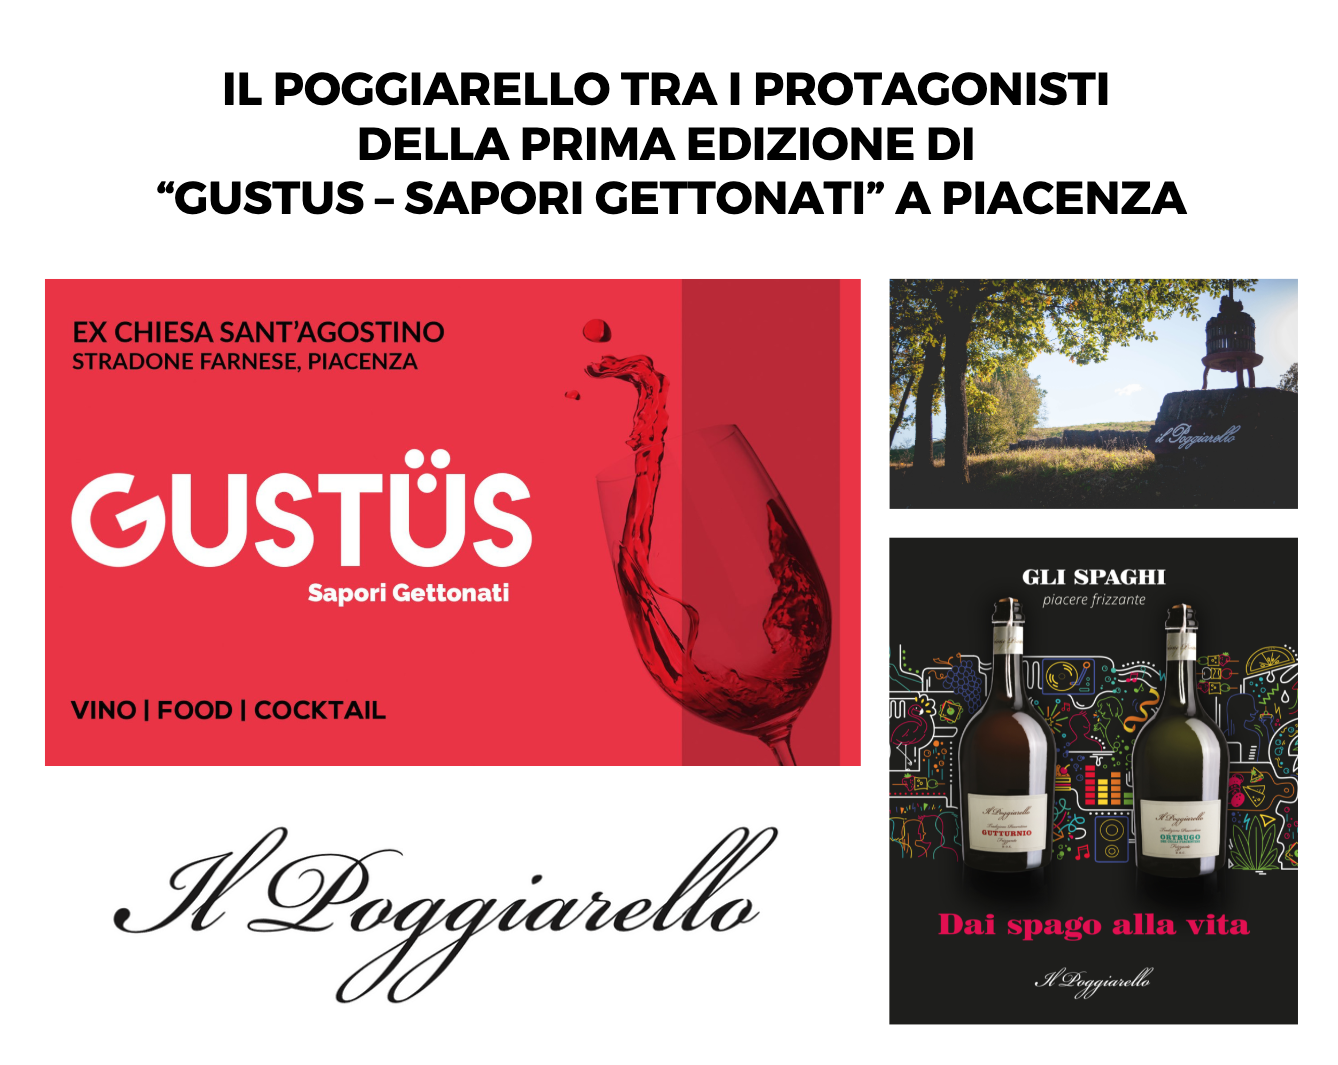 Il Poggiarello tra i protagonisti della prima edizione di “Gustus – Sapori Gettonati” a Piacenza